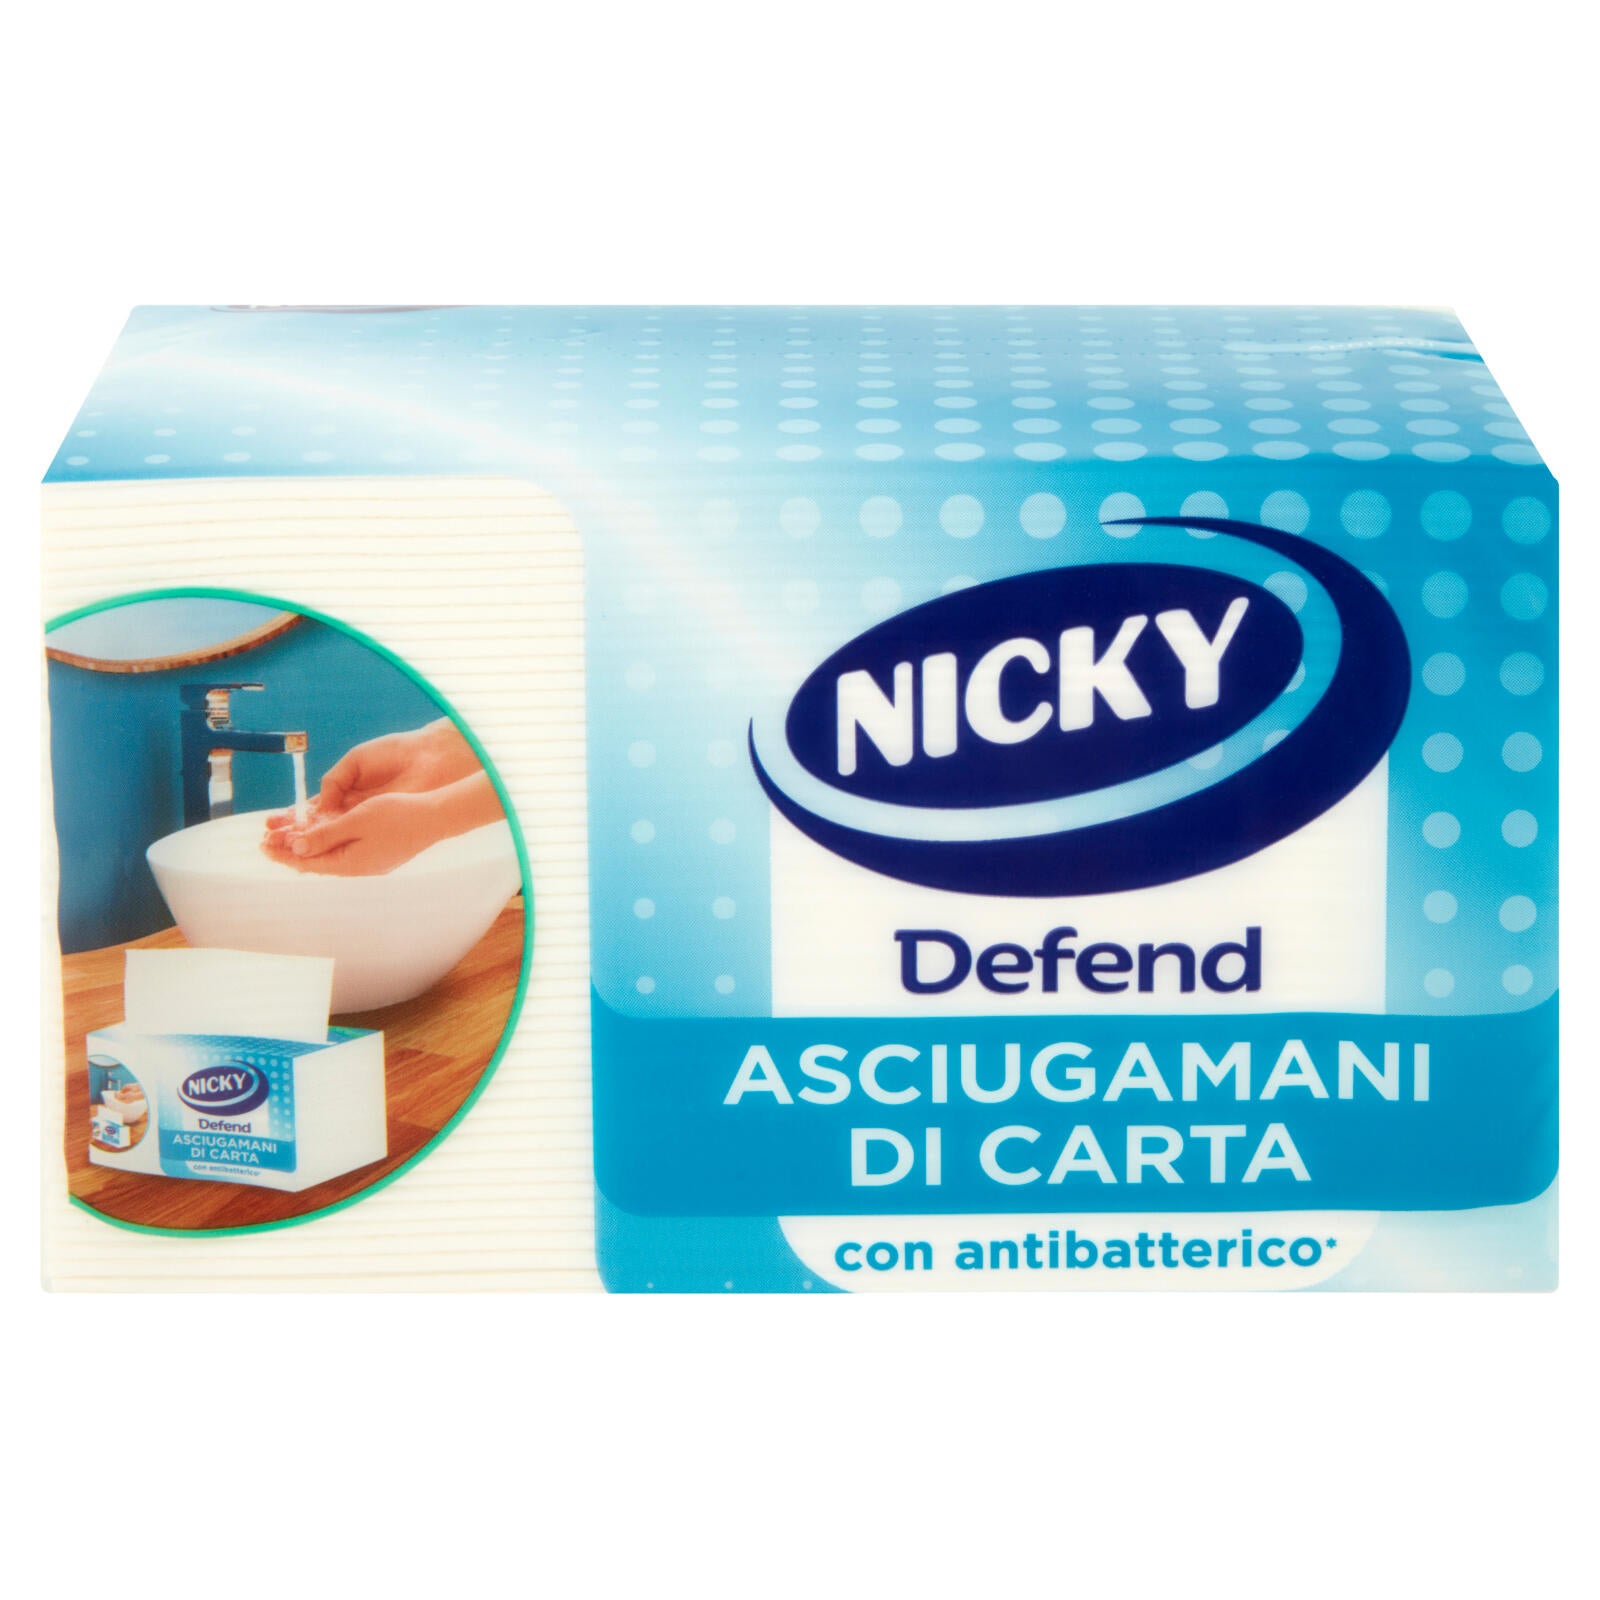 Nicky Defend Asciugamani di Carta con antibatterico* Fogli 100 pz